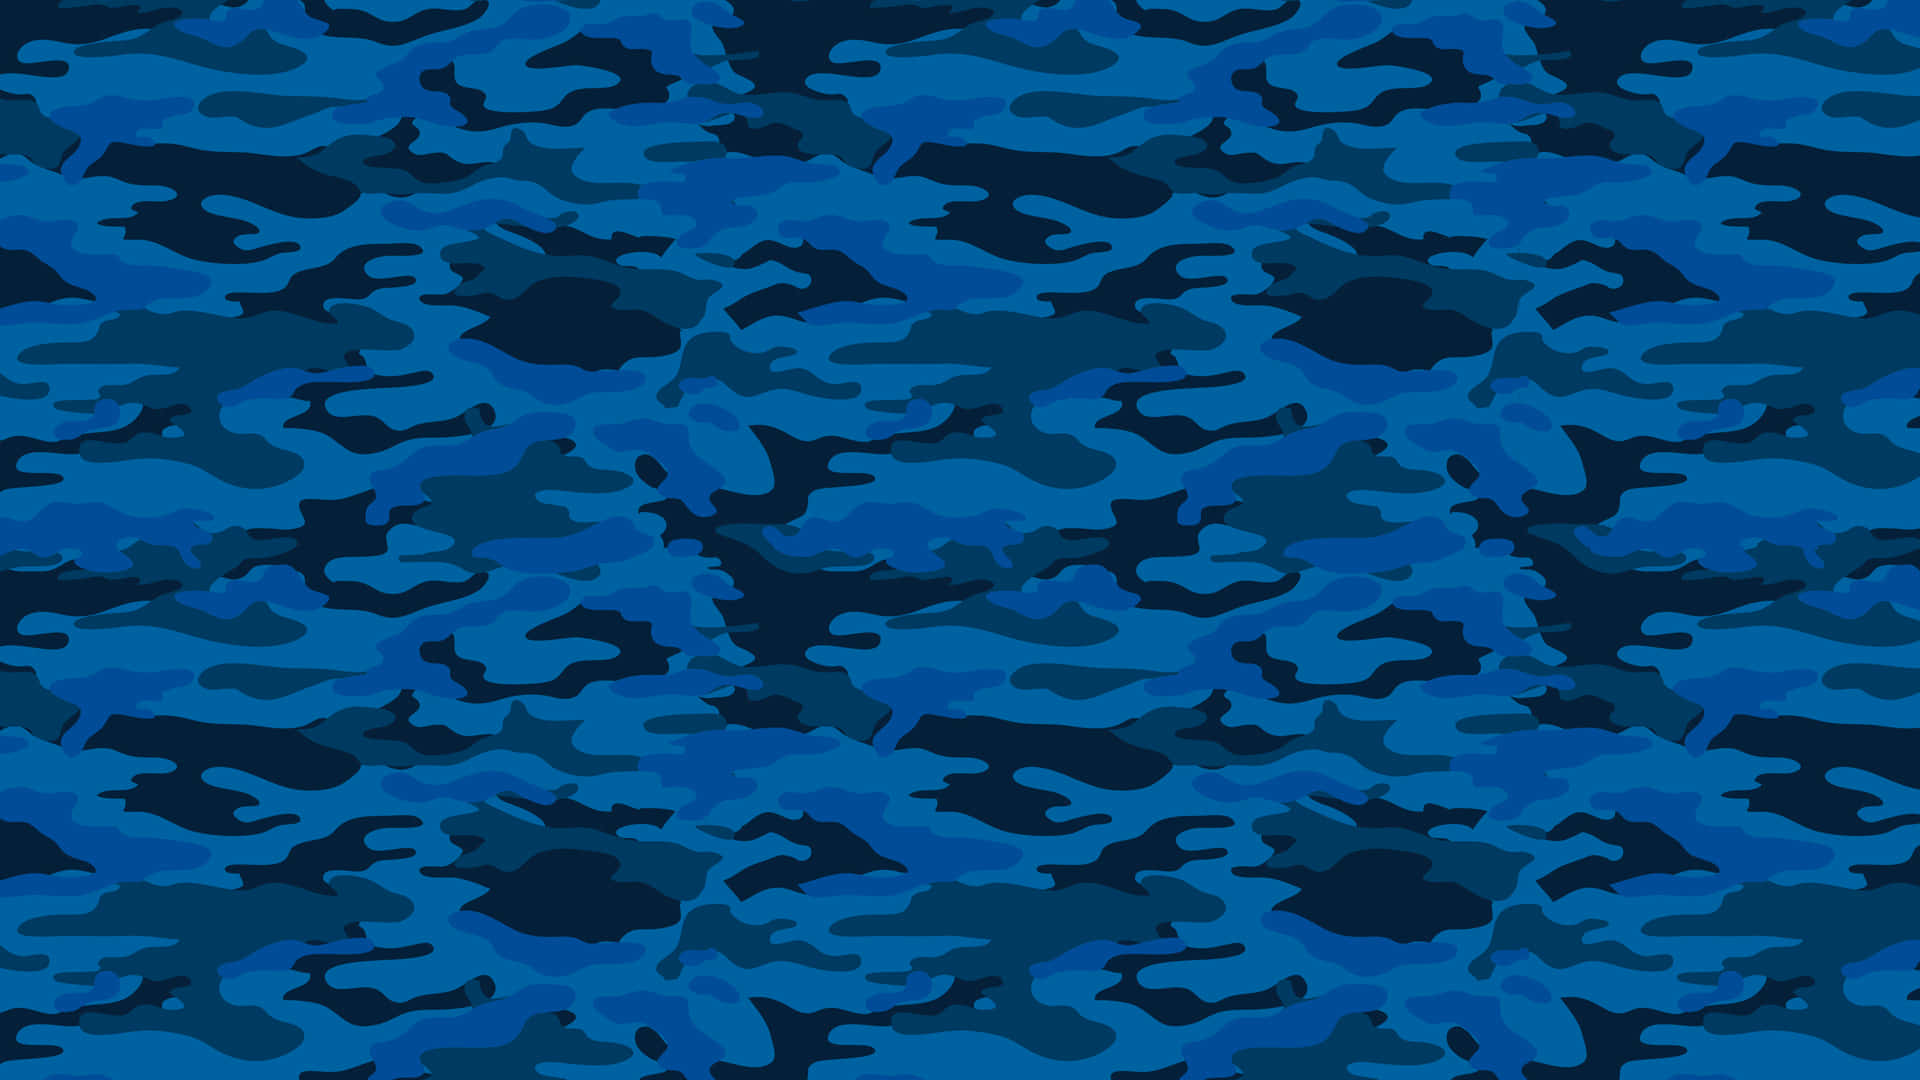 An intriguing blue camo pattern. Wallpaper